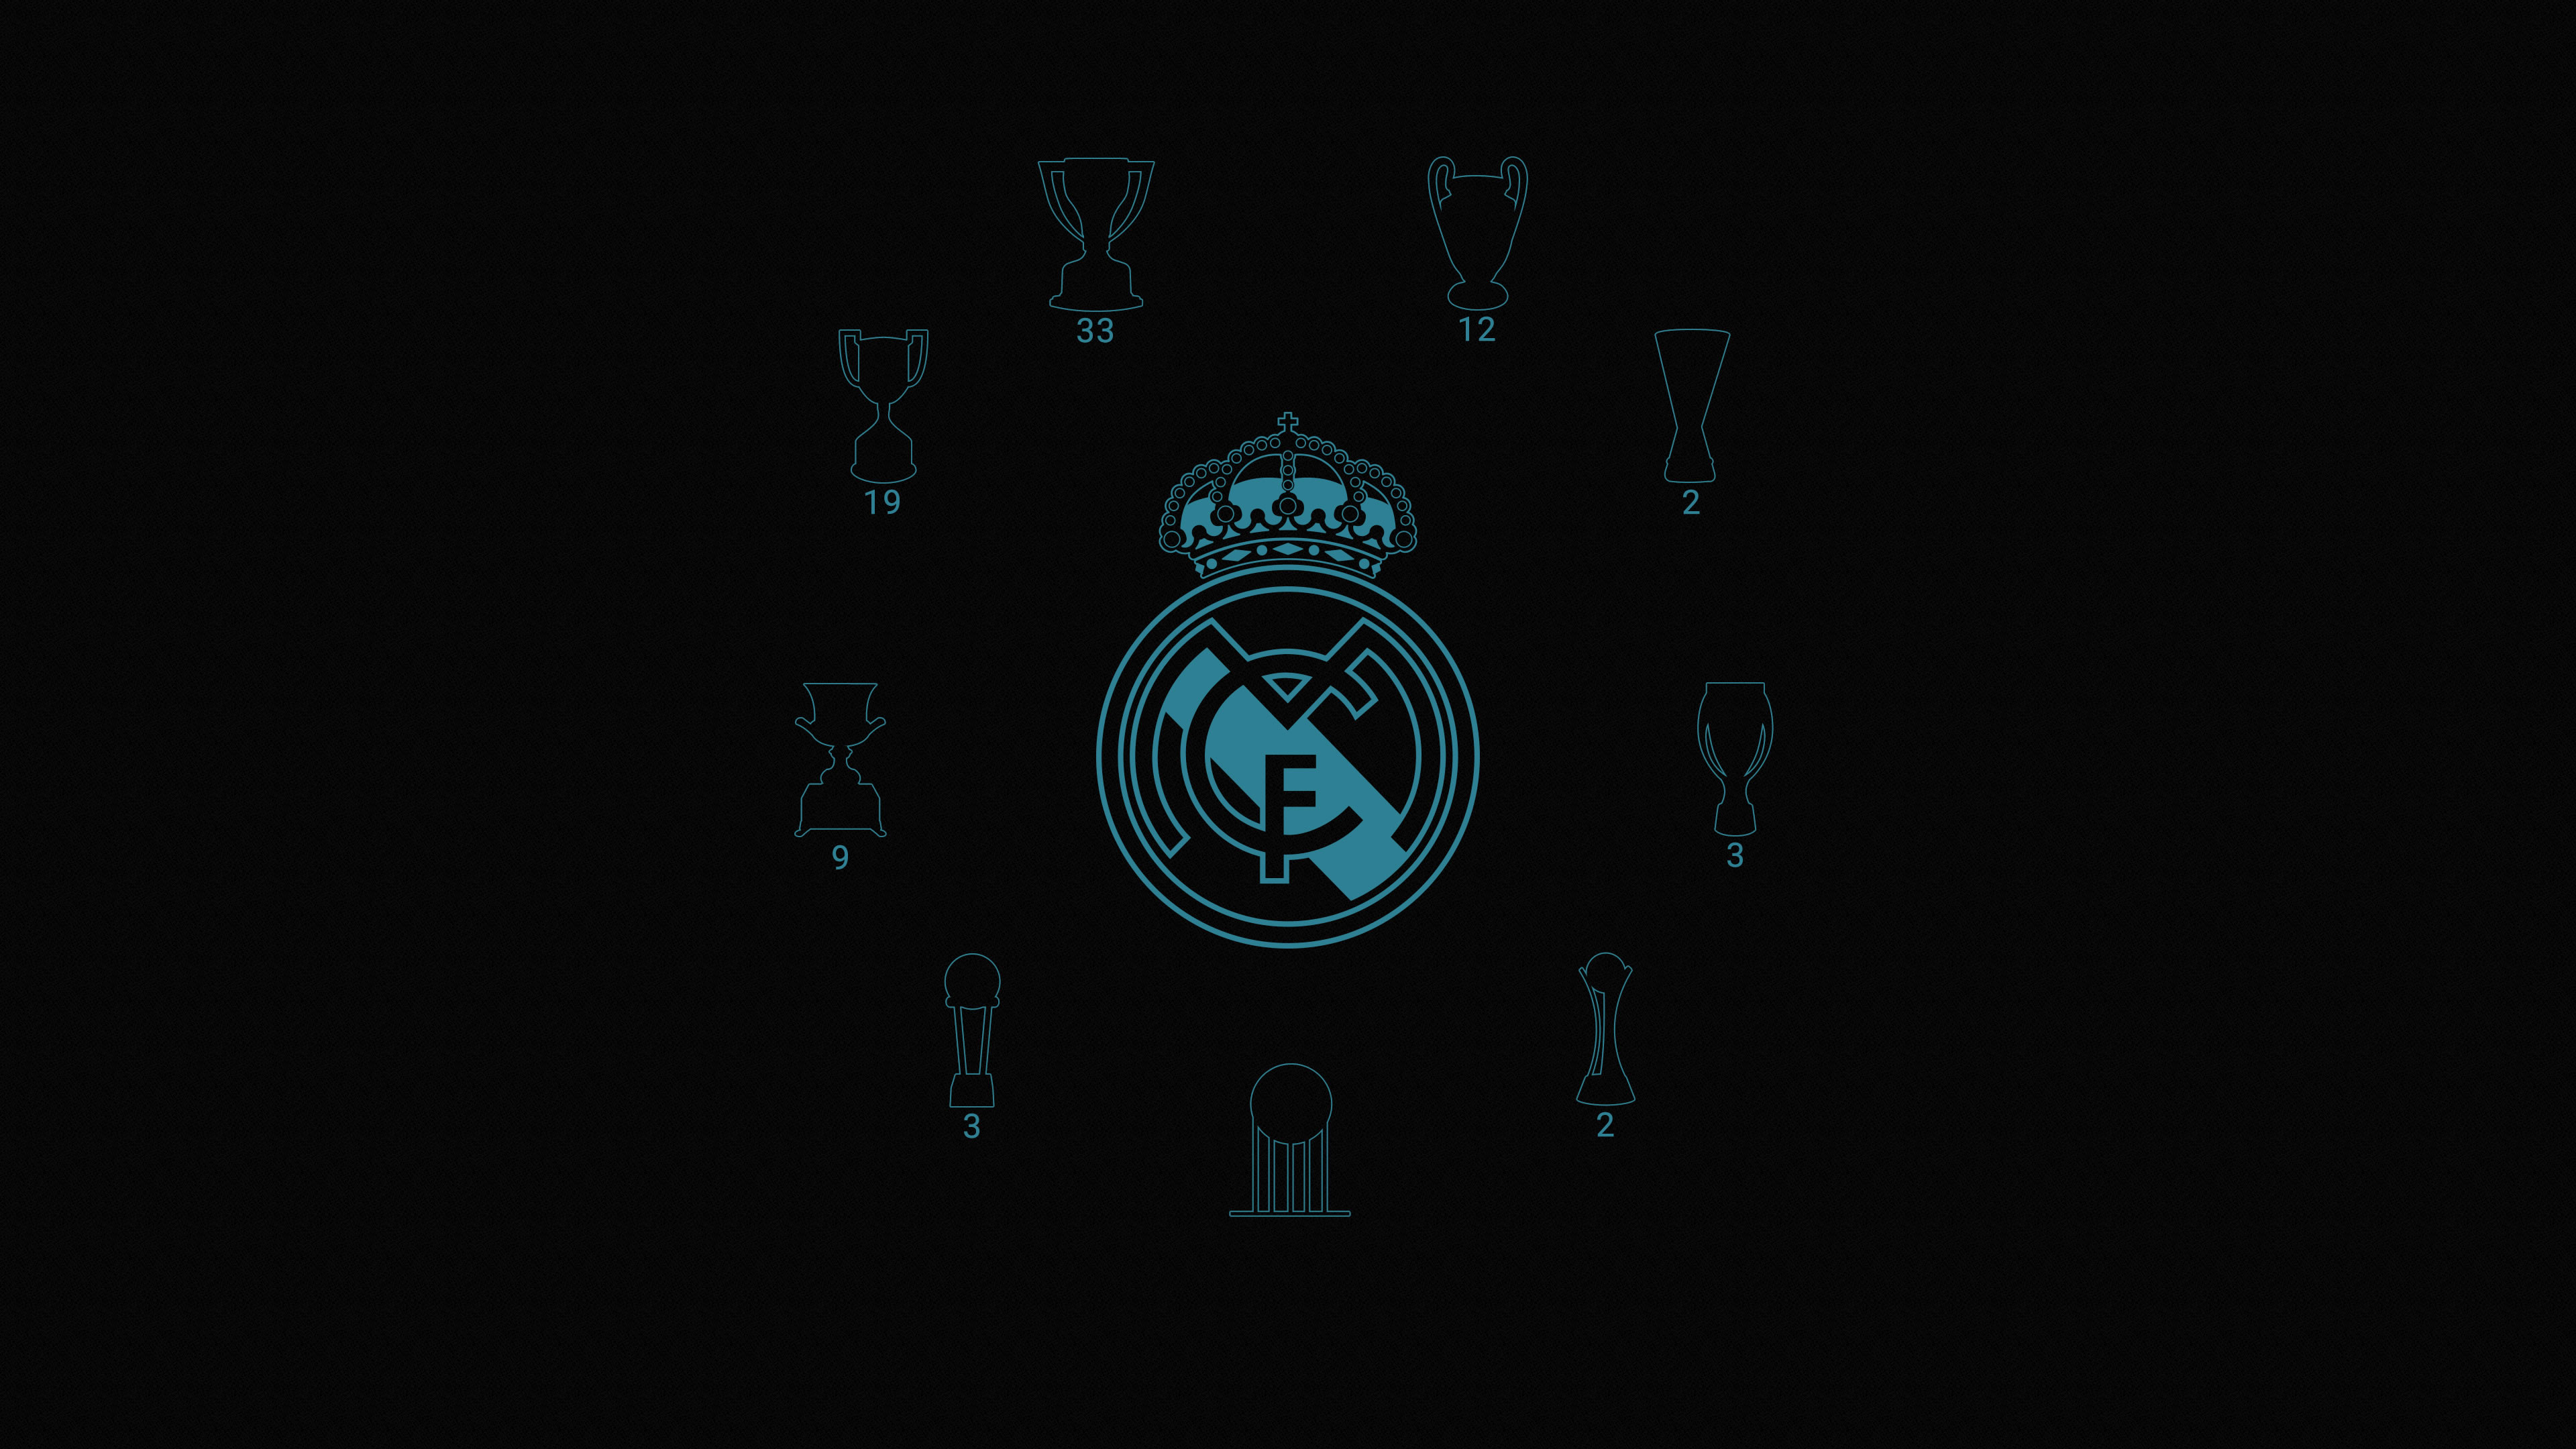 Tải xuống miễn phí Real Madrid Wallpaper 2018 với cực nhiều hình ảnh (72 hình ảnh [3840x2160]), bạn sẽ có thể cập nhật những bức ảnh mới nhất của câu lạc bộ vô địch này một cách hoàn toàn thuận tiện.